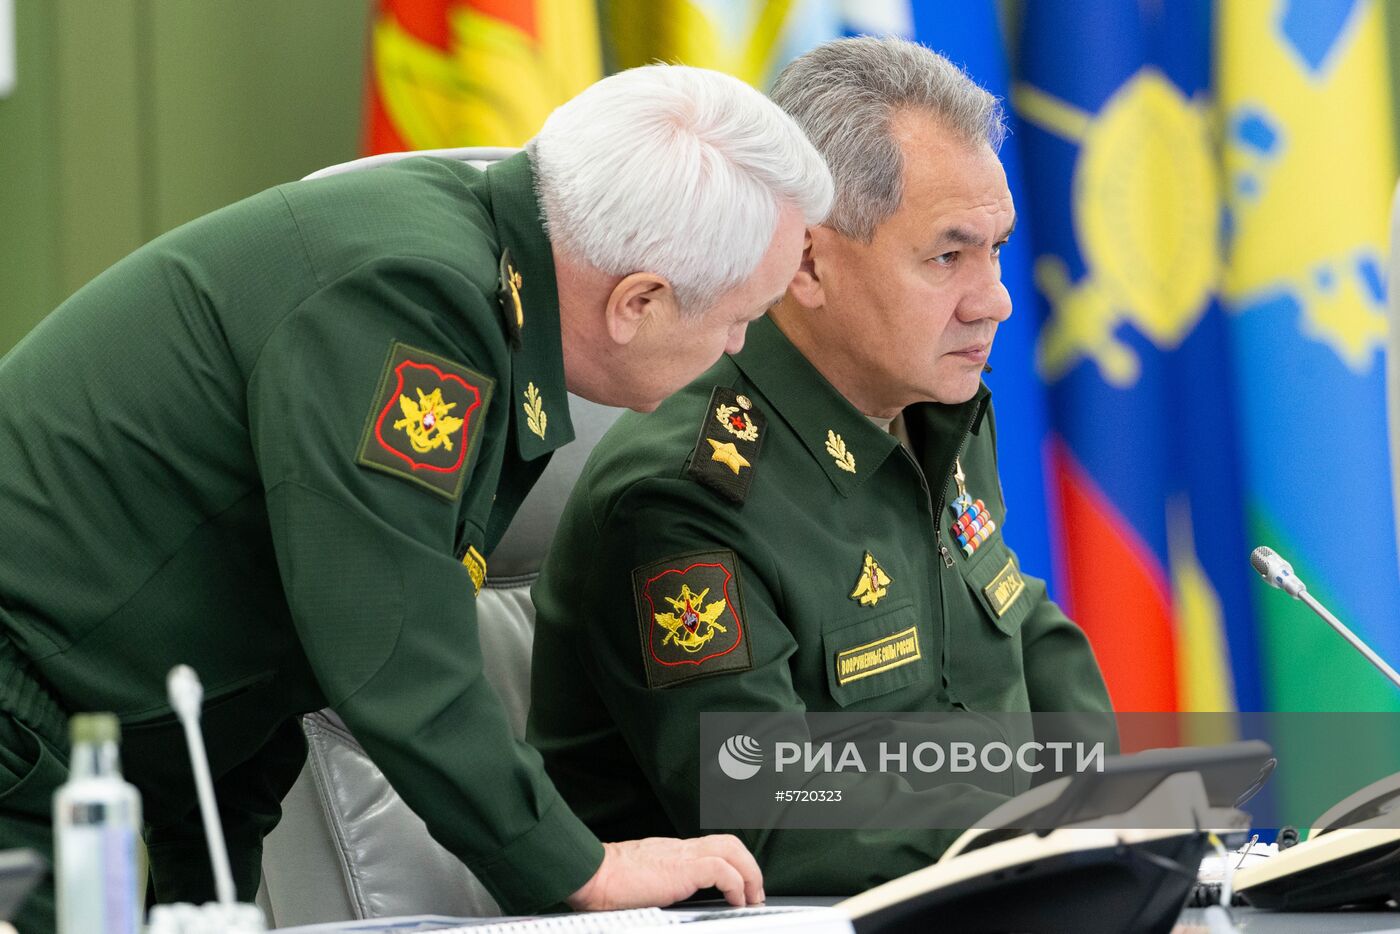 Министр обороны РФ С. Шойгу провел селекторное совещание